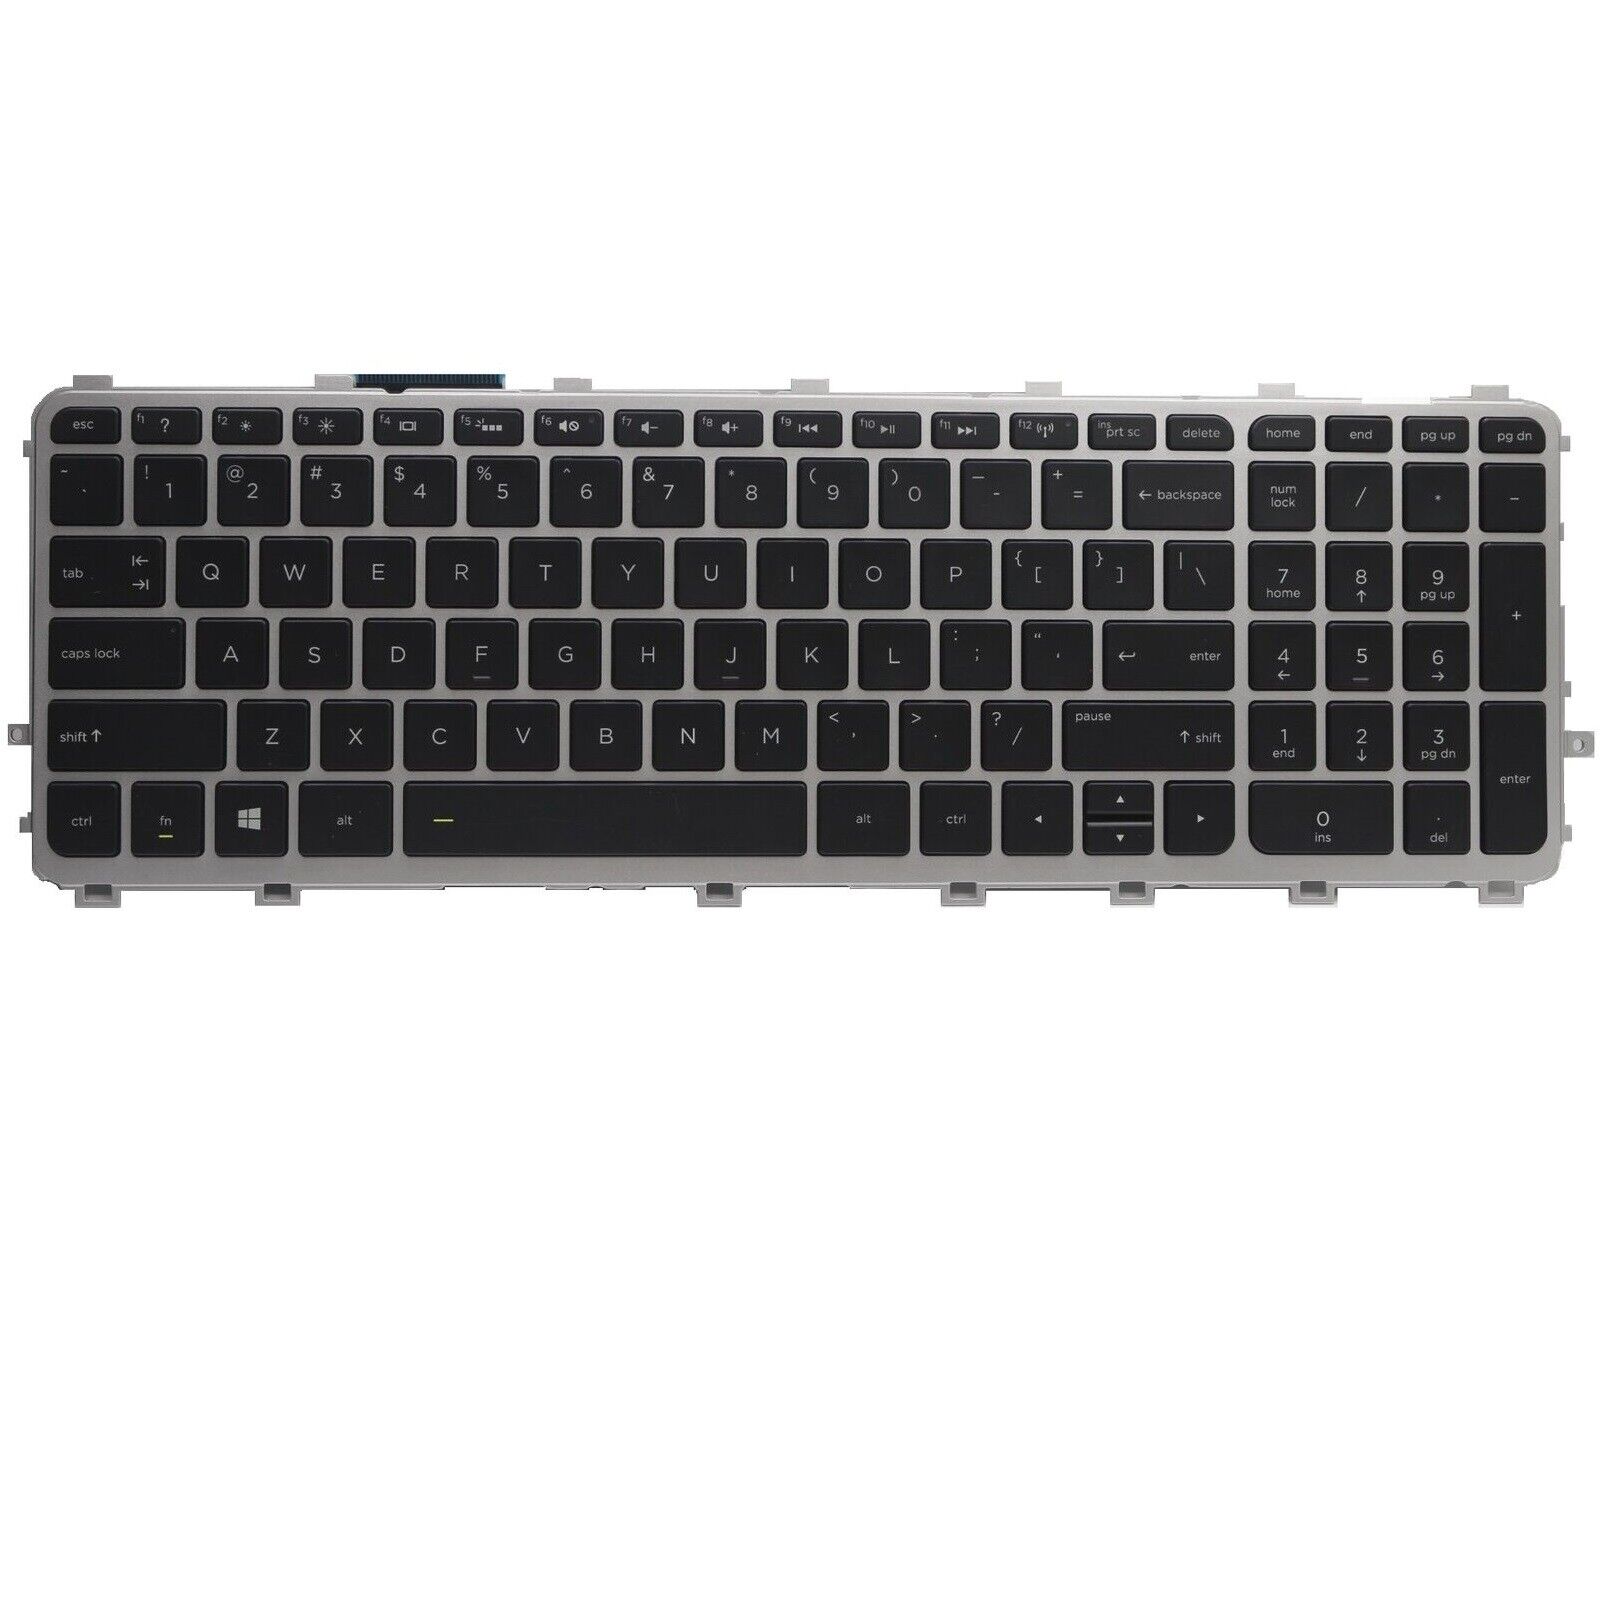 Original New for HP ENVY M7-J020DX US Backlit Keyboard